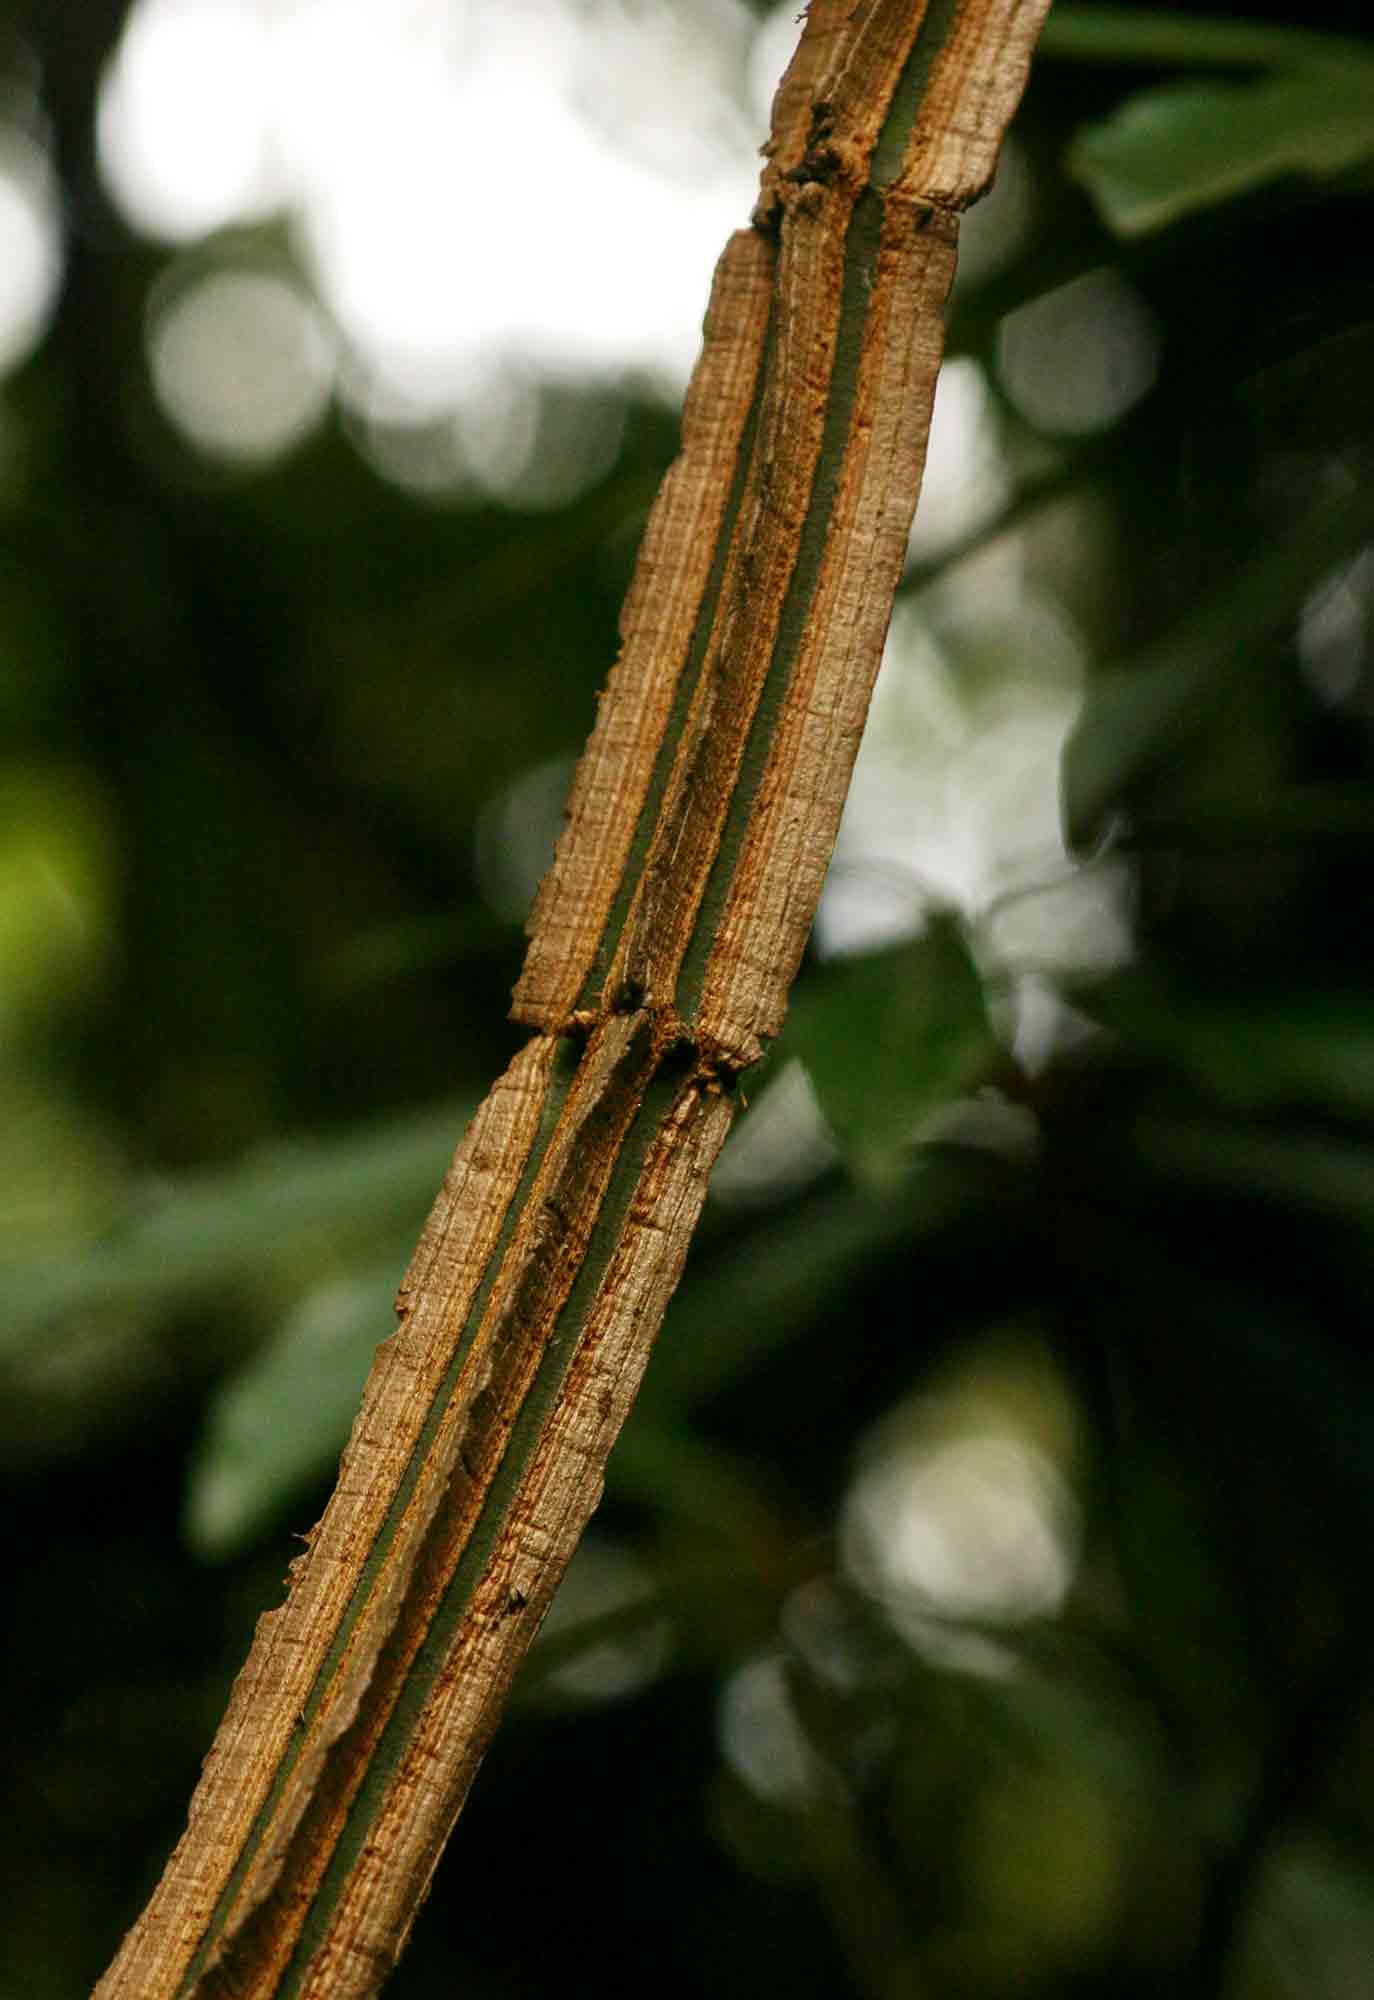 Cissus petiolata